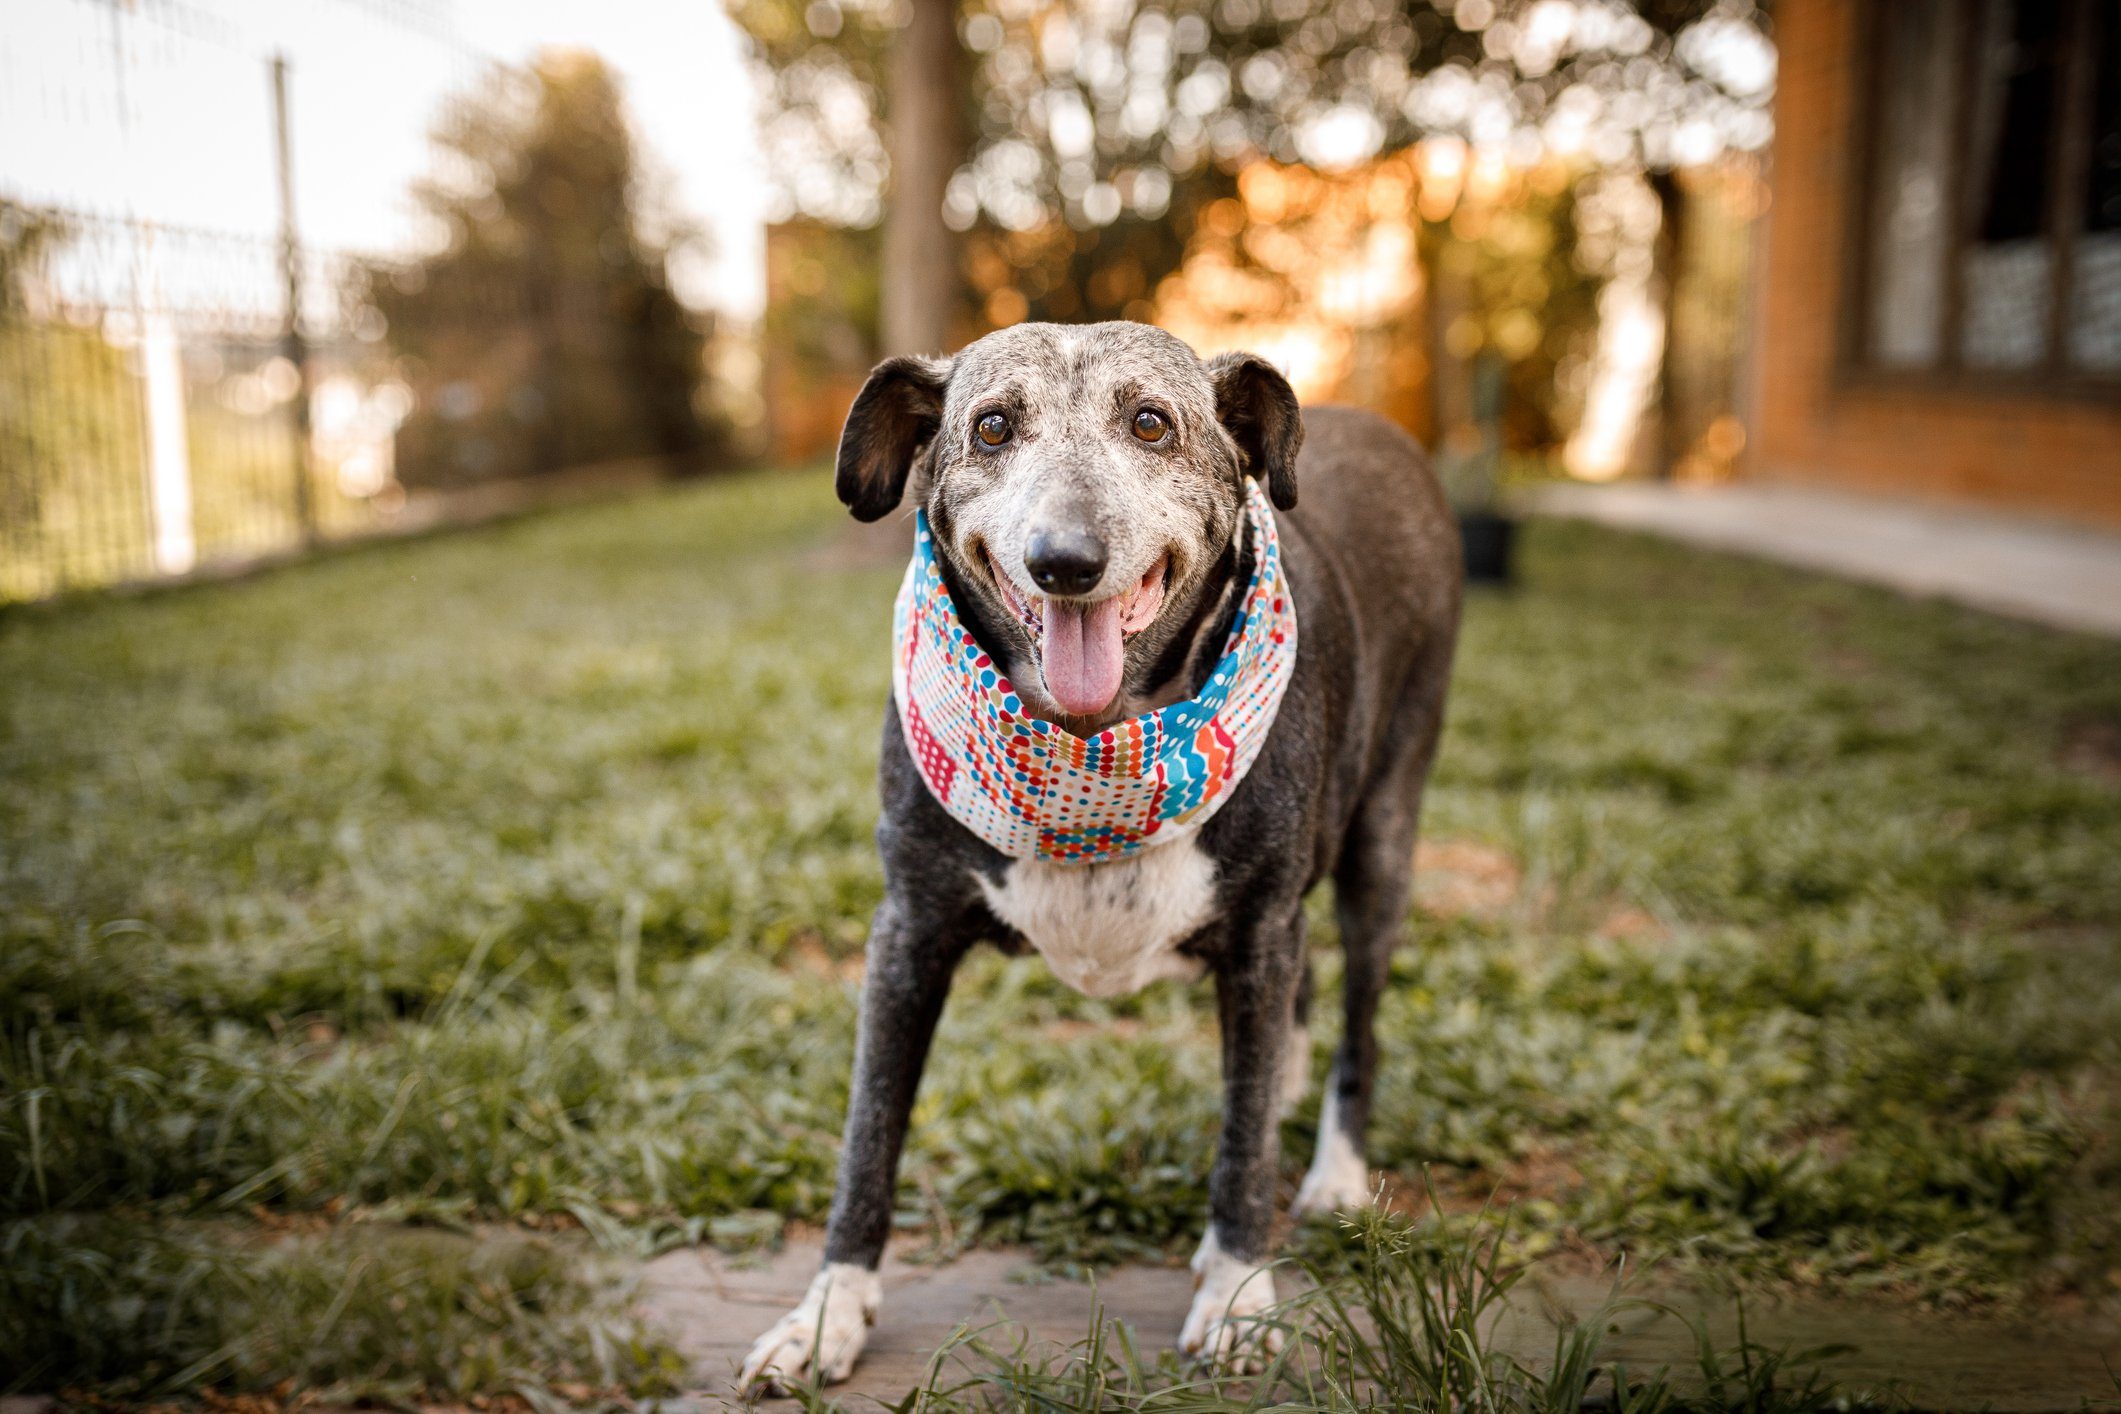 Senior mixed breed dog smiling at camera and standing at grass